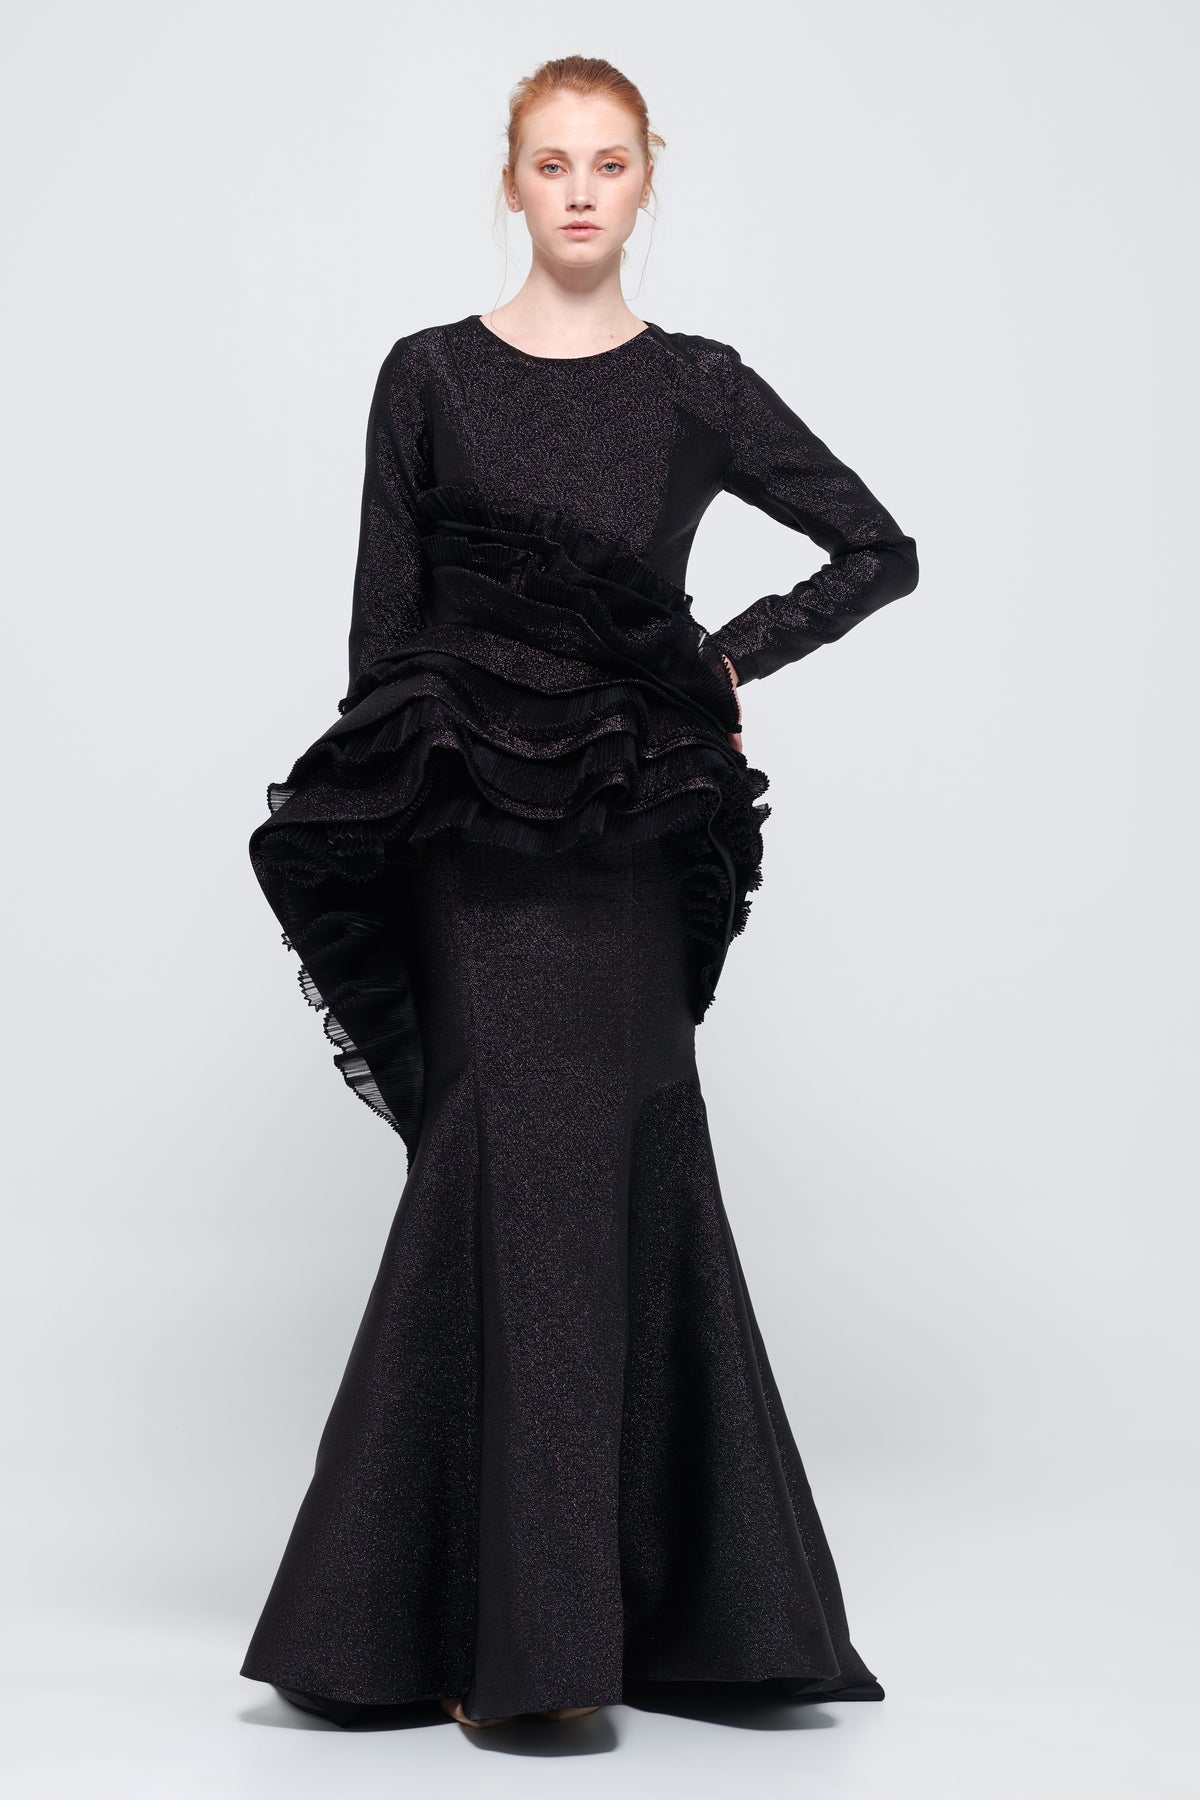 Ruffled Peplum Detail Black Mermaid Dress